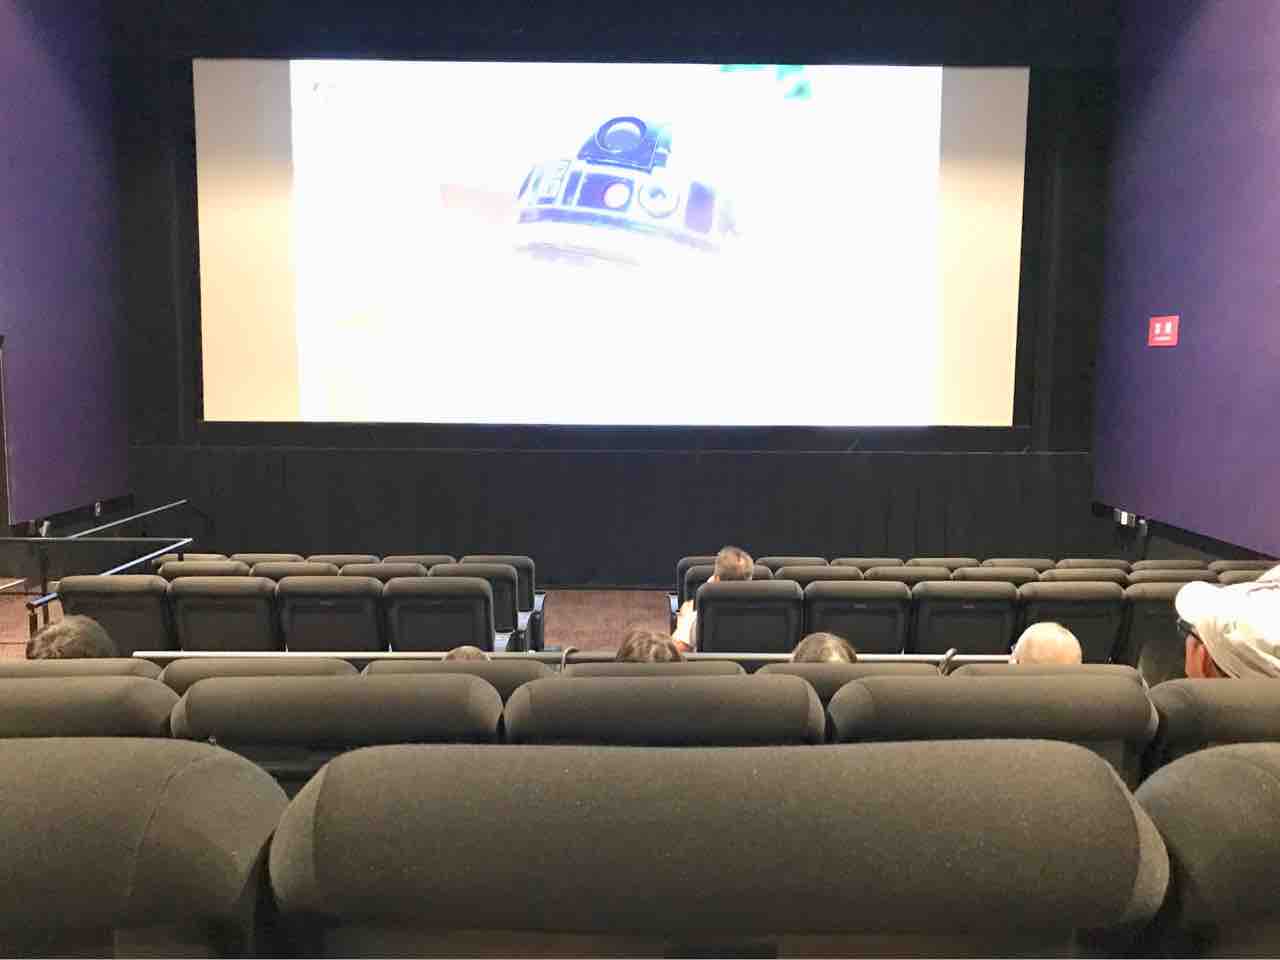 Tohoシネマズ川崎 スクリーン2 座席表のおすすめの見やすい席 トーキョー映画館番長